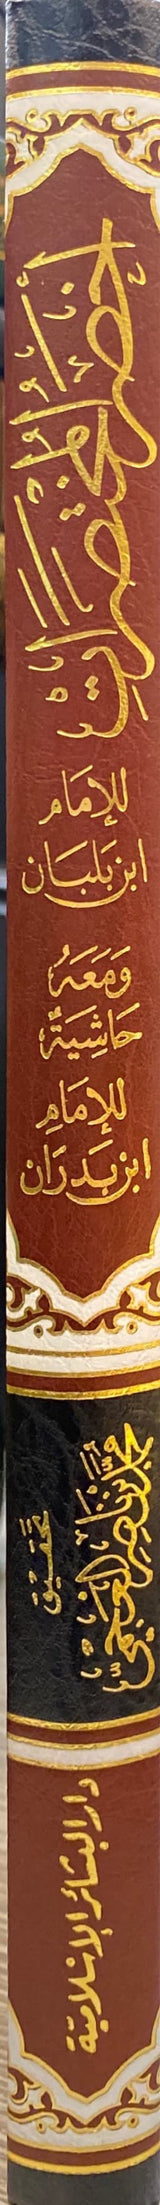 كتاب اخصر المختصرات     Akhsar Al Mukhtasarat